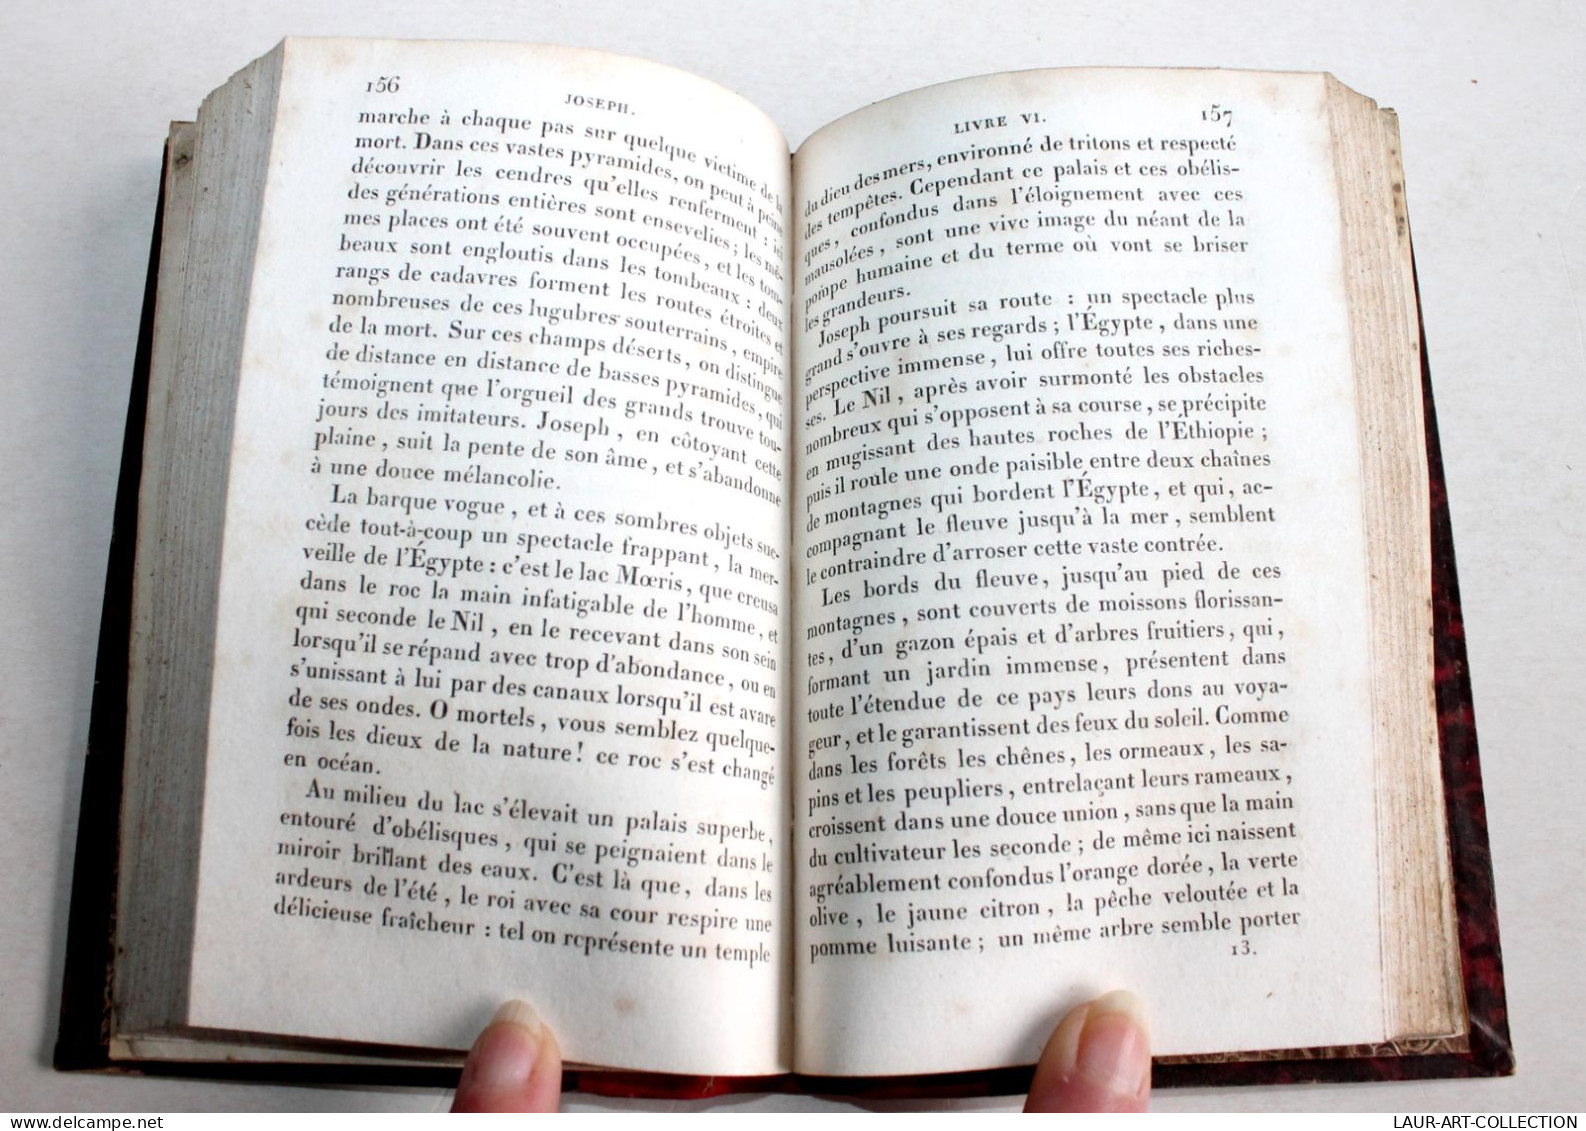 JOSEPH, POEME Par BITAUBE 1830 BUREAU DES EDITEURS / ANCIEN LIVRE DE POESIE XIXe SIECLE (1803.121) - French Authors